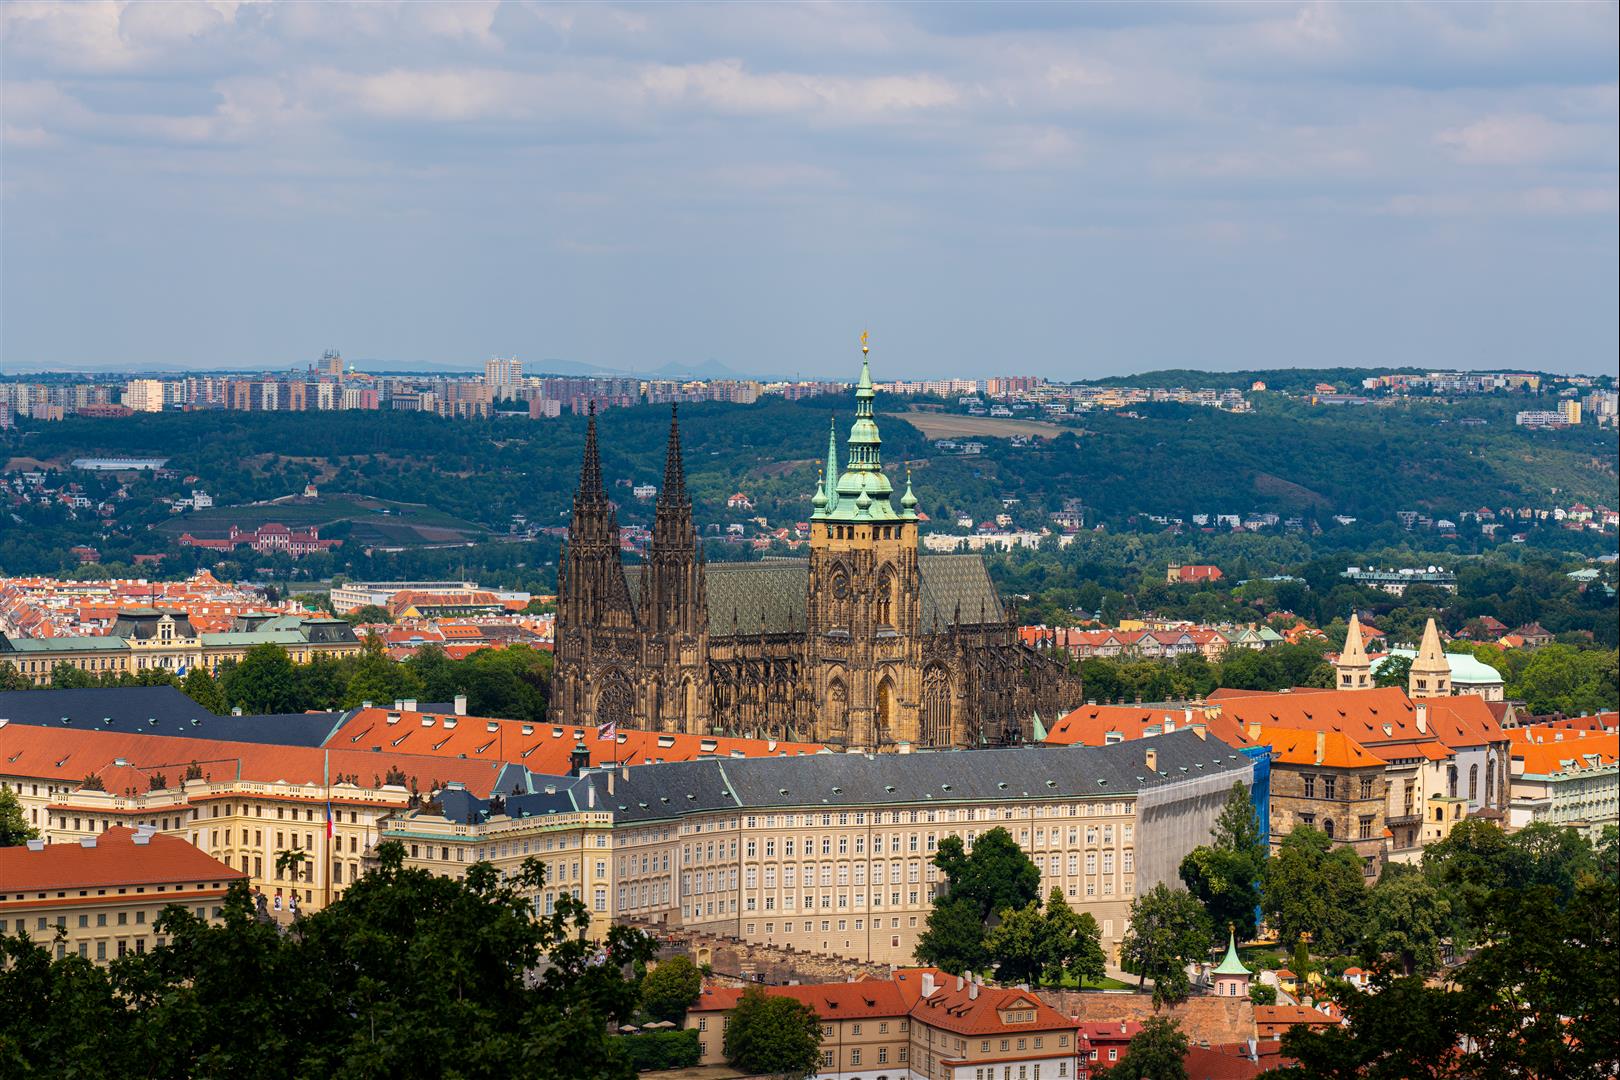 [捷克/布拉格] 布拉格景點 - 城堡區、天文鐘、老城廣場、查理大橋、藍儂牆布拉格景點地圖